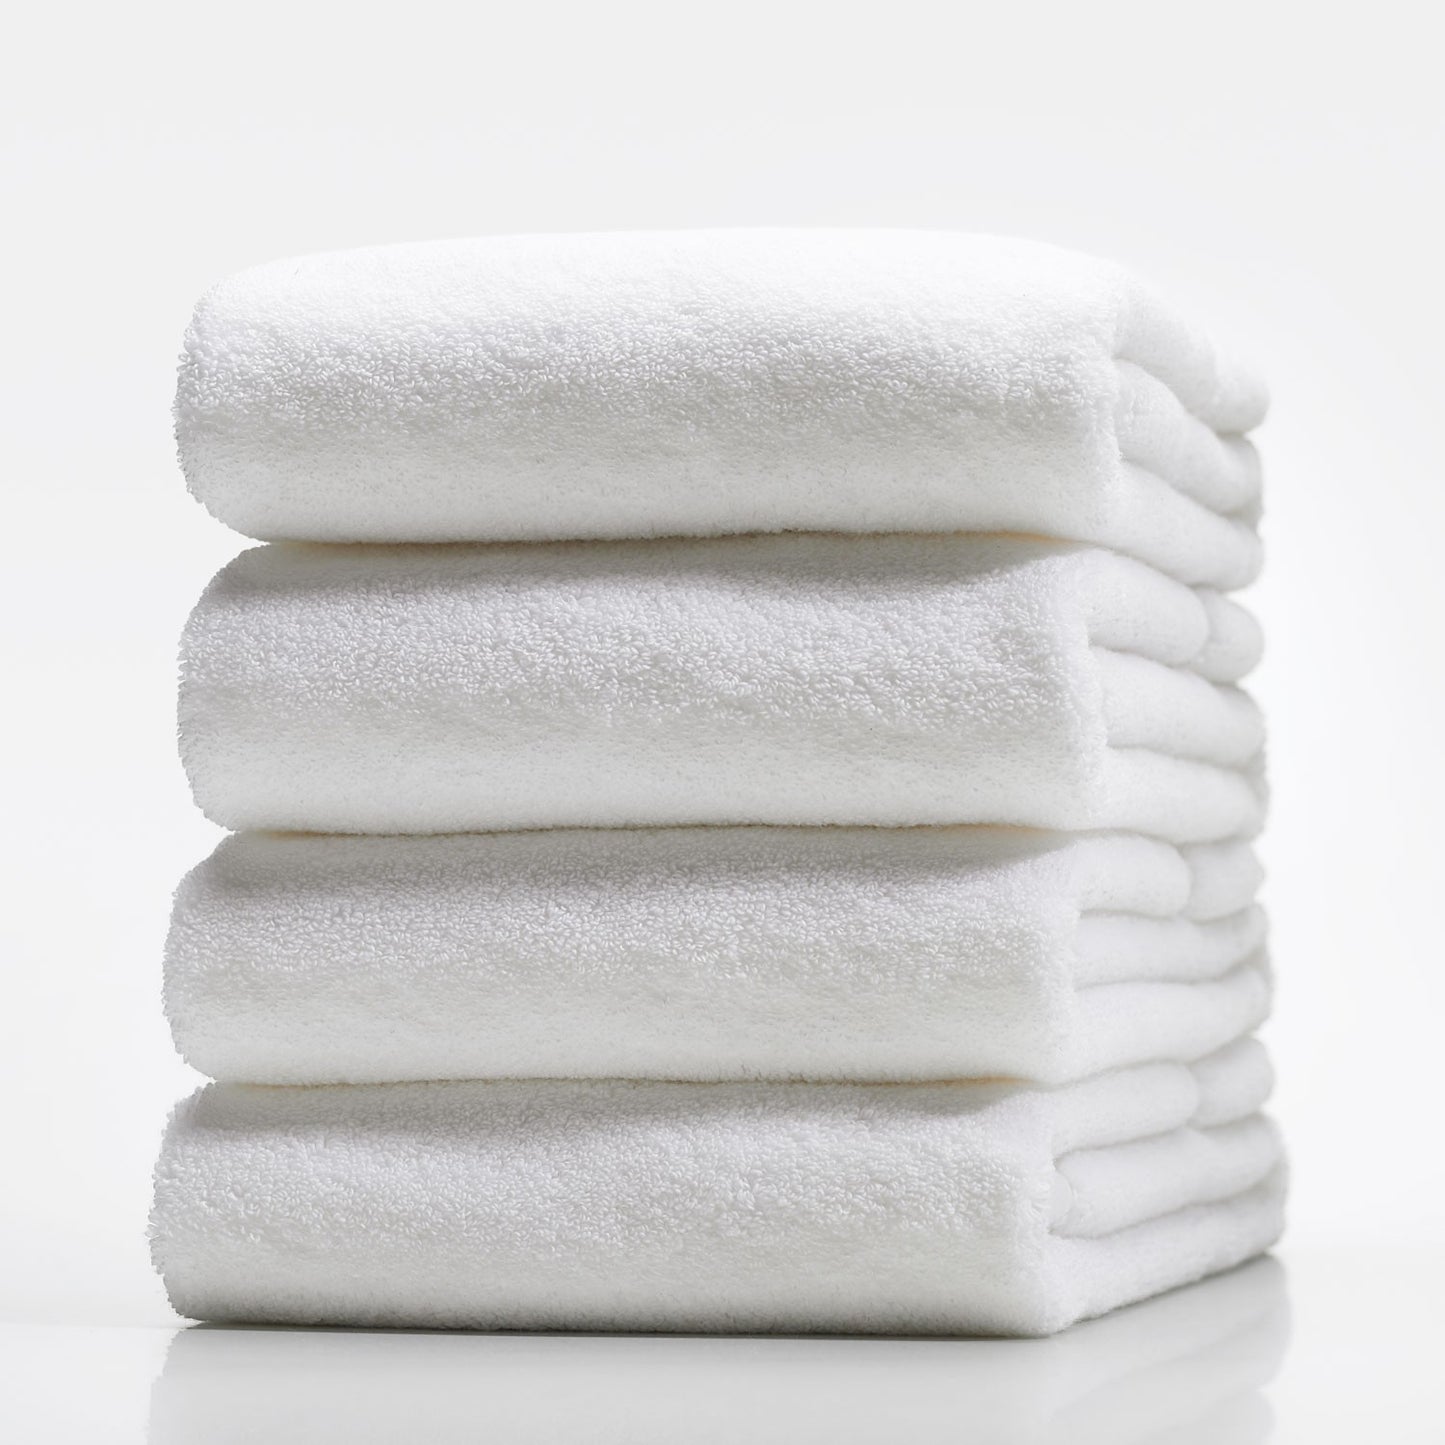 Bath Towel Premium Cotton White Adult